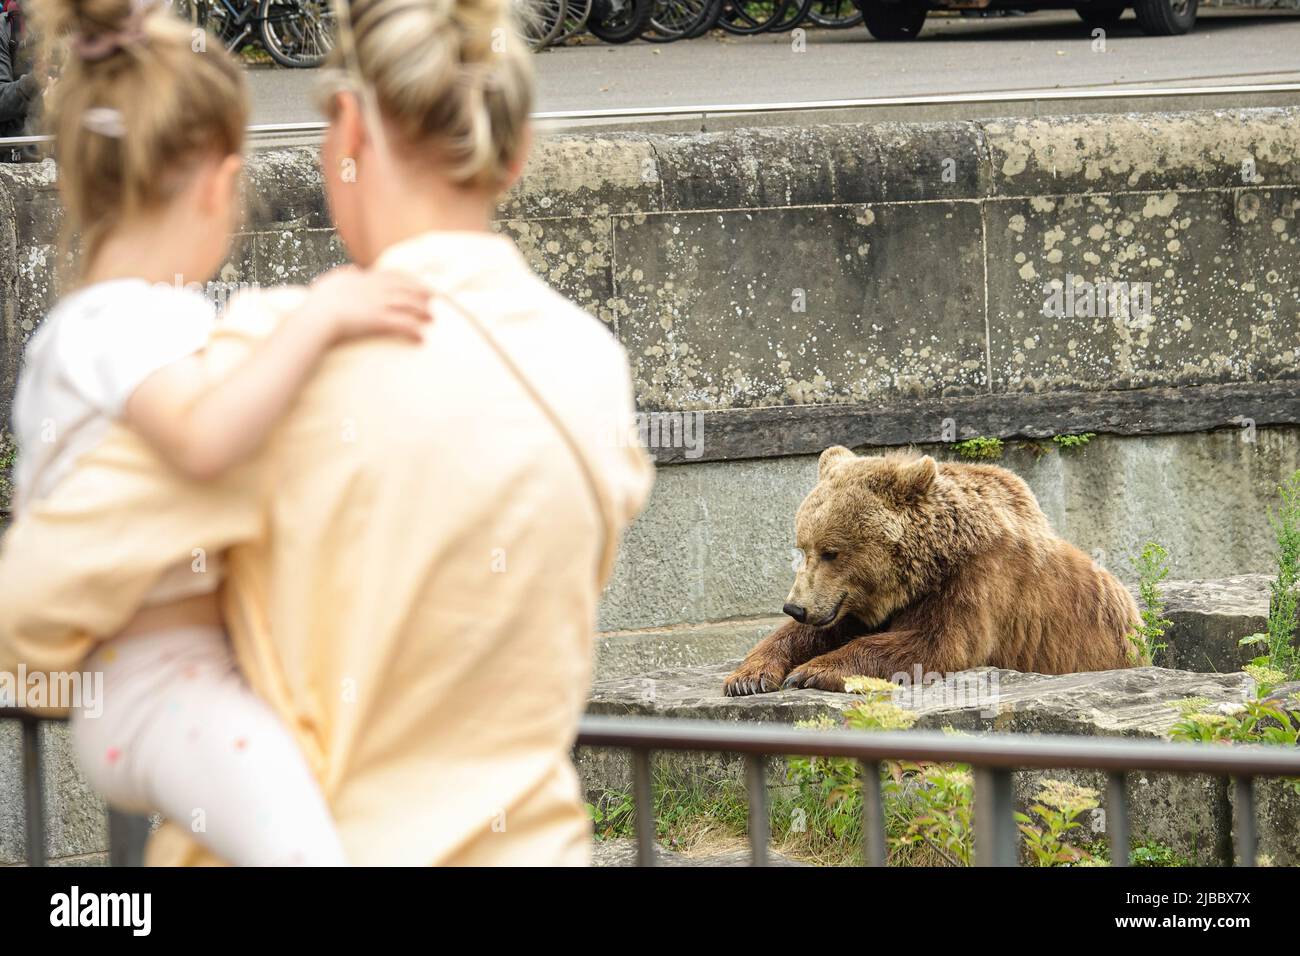 Parc de l'ours de Berne. Le Bear Pit est l'une des destinations touristiques les plus populaires pour les enfants. Berne, Suisse - juin 2022 Banque D'Images